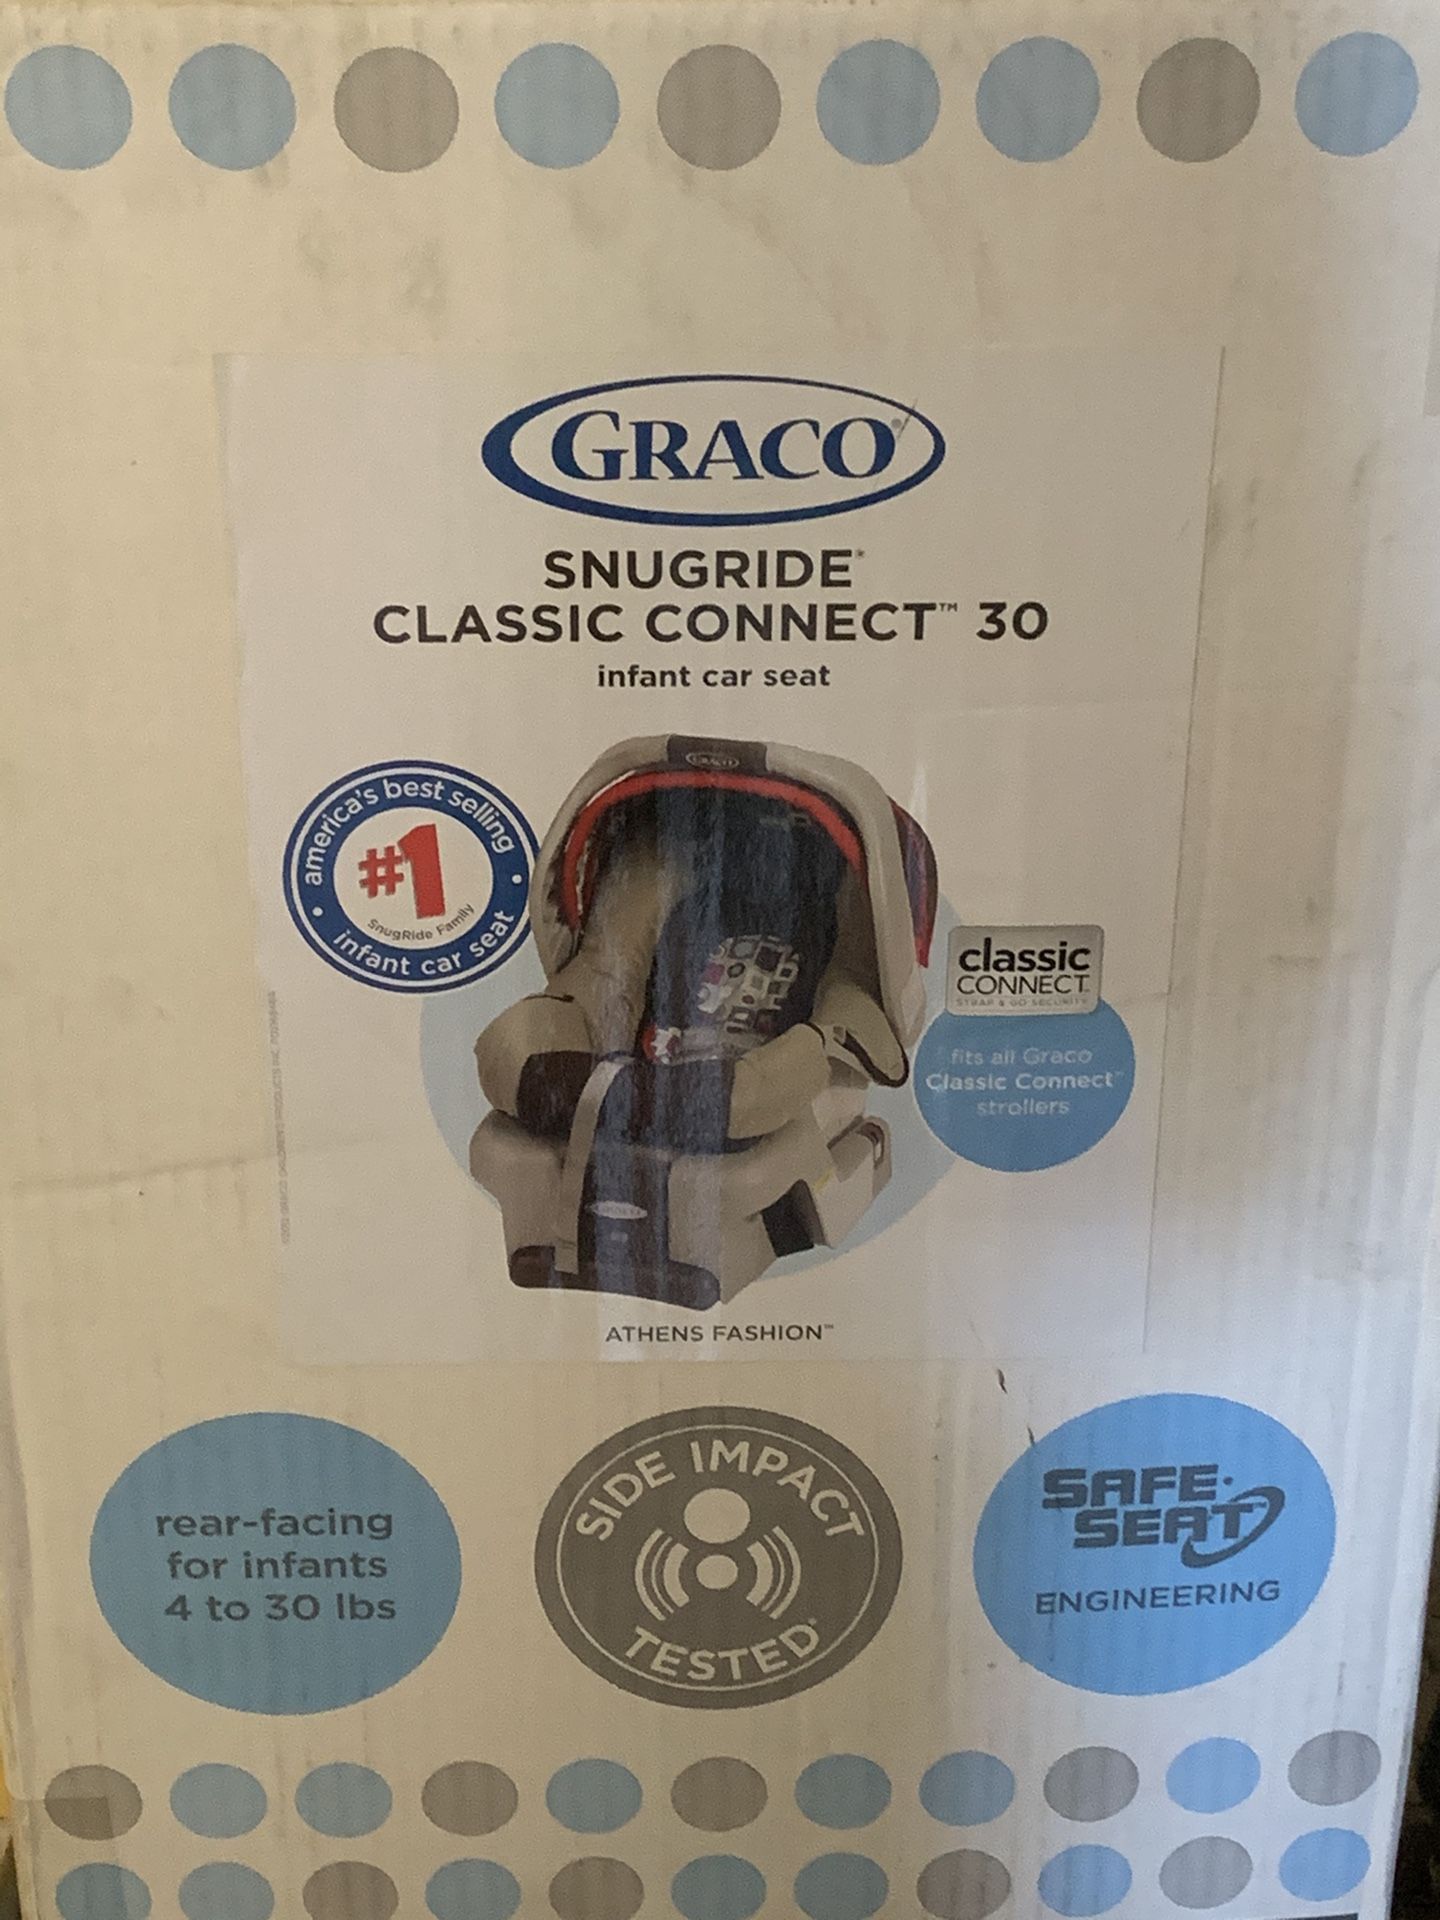 GRACO Snugride Classic Connect 30 infant car seat